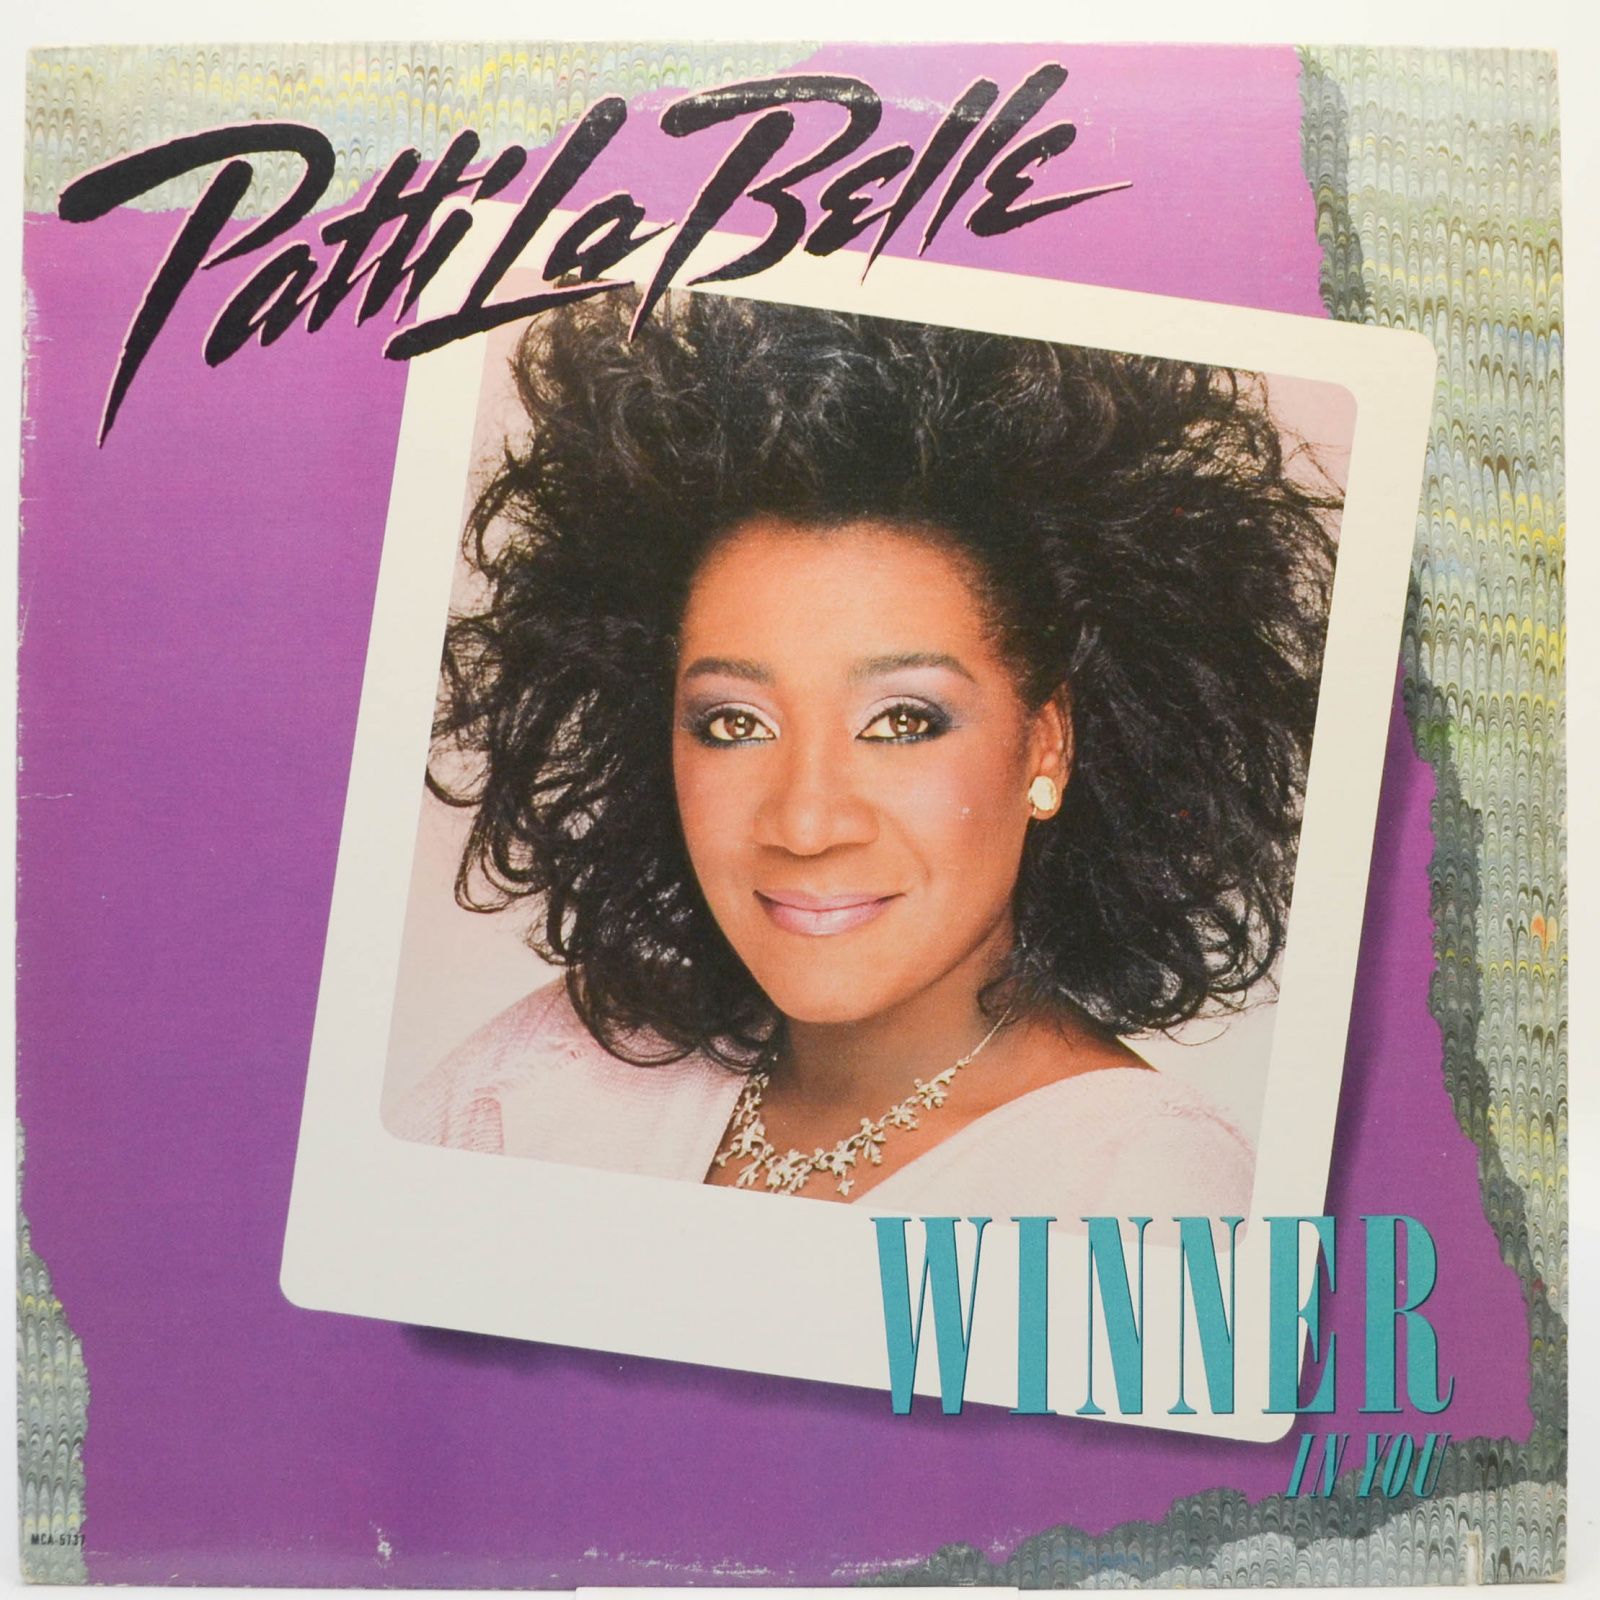 Patti LaBelle — Winner In You, 1986